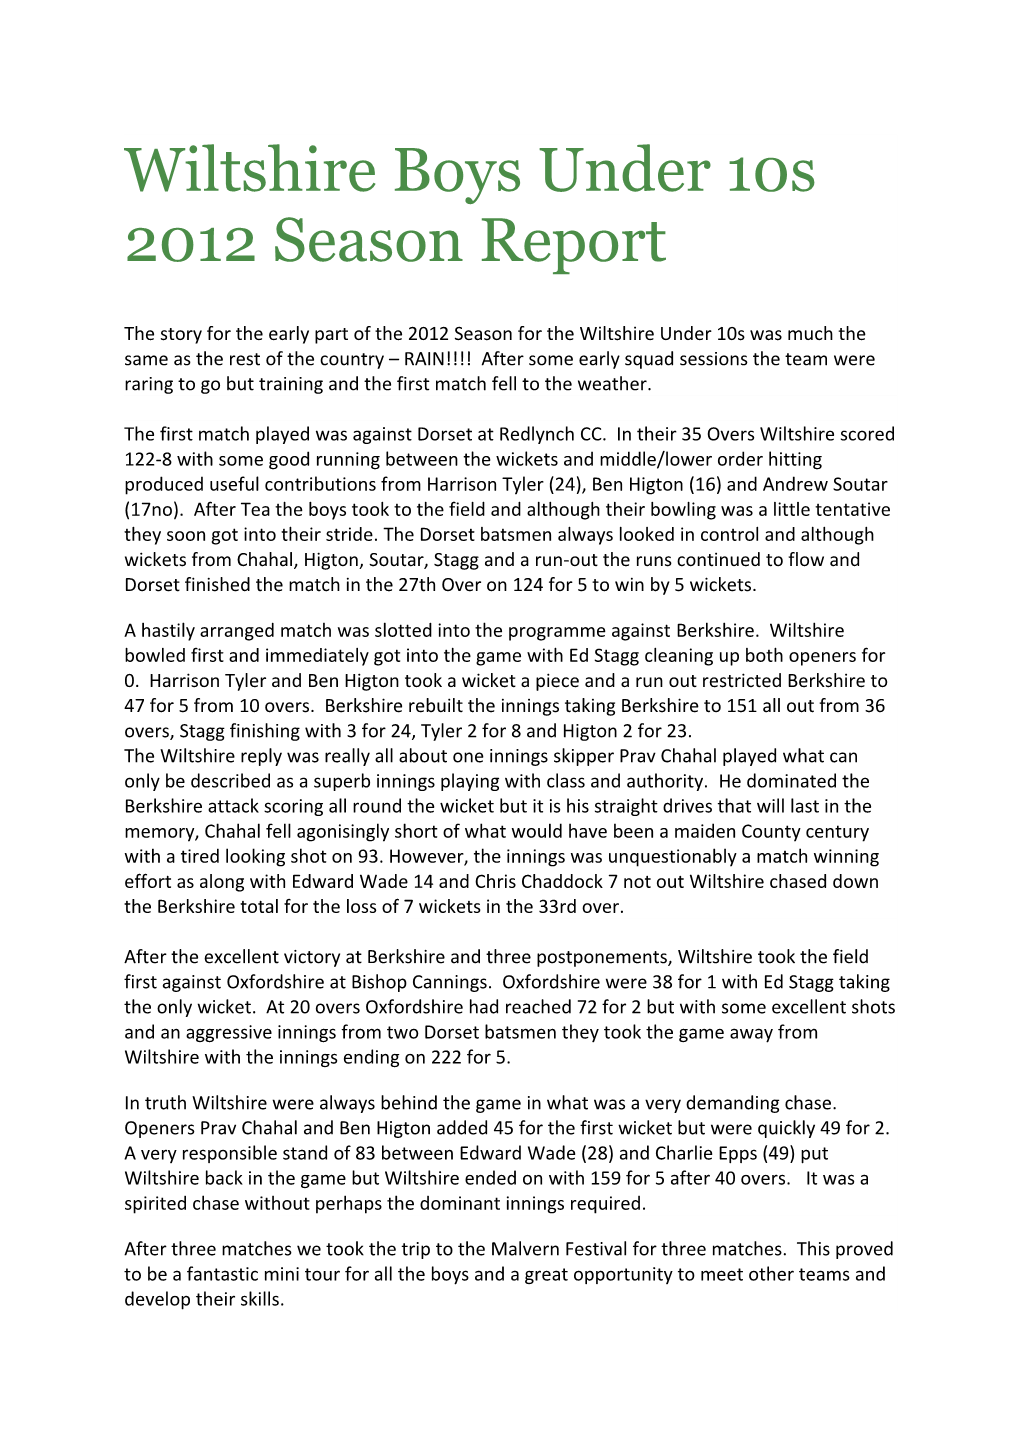 Wiltshire Boys Under 10S 2012 Season Report